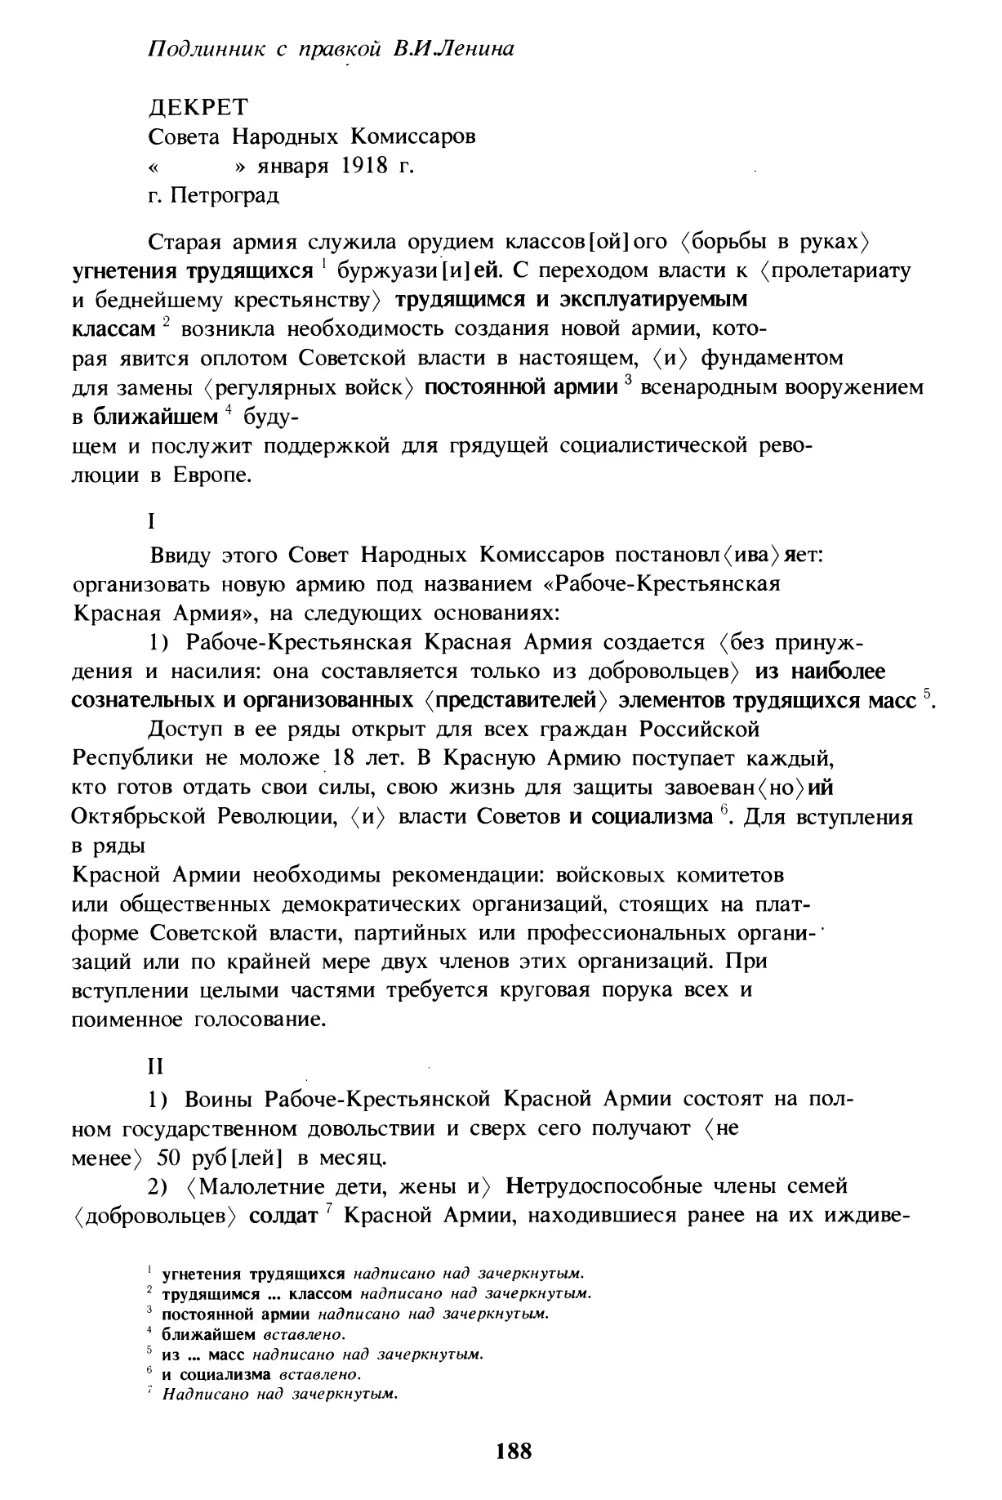 Декрет об организации Рабоче-Крестьянской Красной Армии